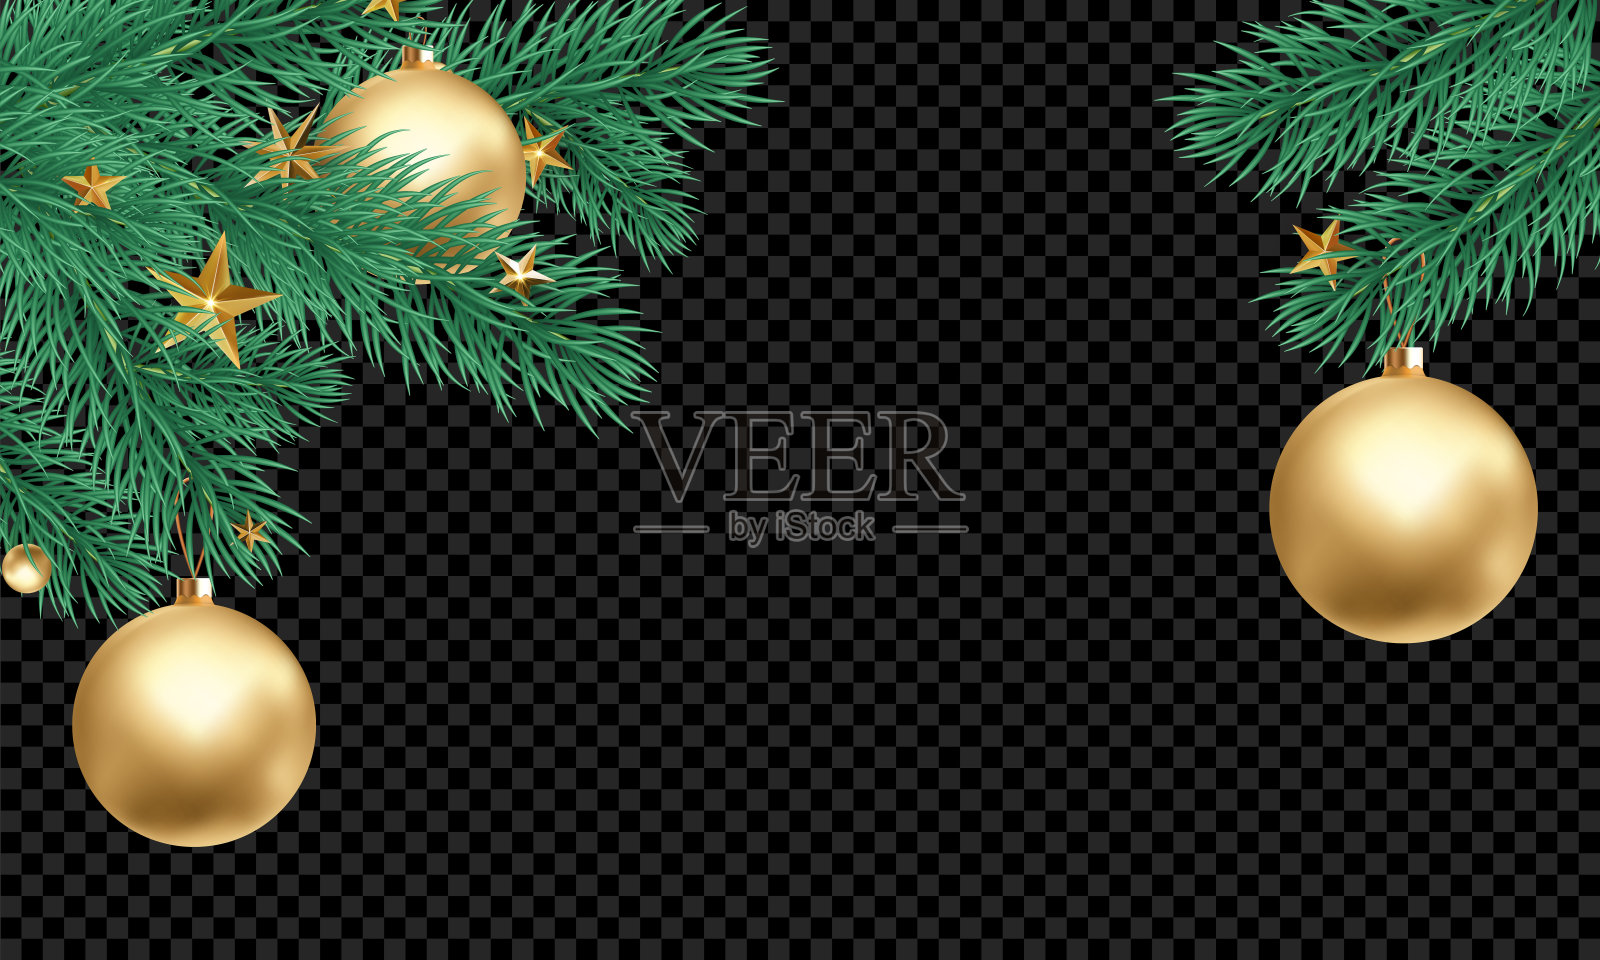 圣诞节日贺卡背景模板金球装饰圣诞树的树枝。矢量新年黄金闪耀星星五彩纸屑透明豪华黑色背景插画图片素材